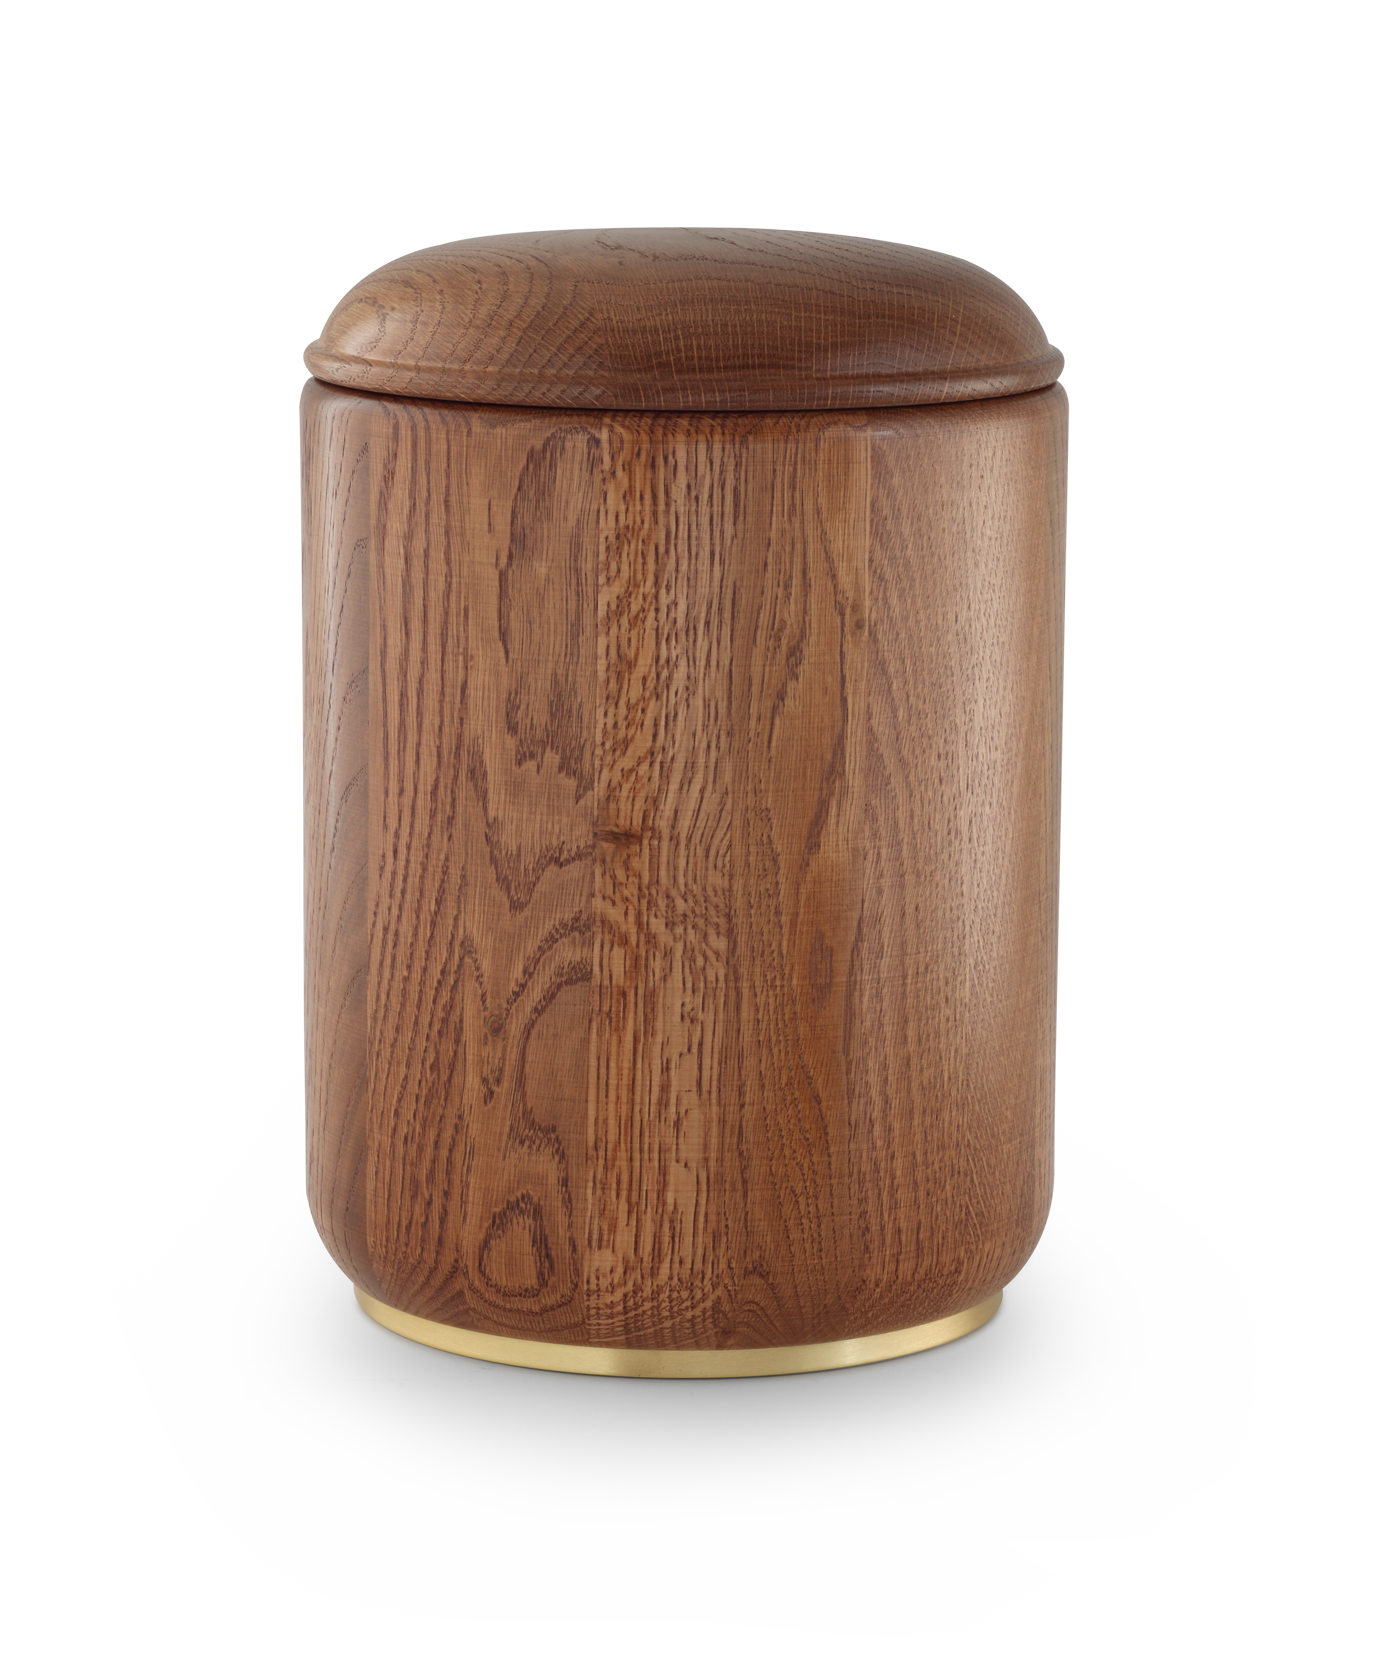 Völsing urn oak with wooden base